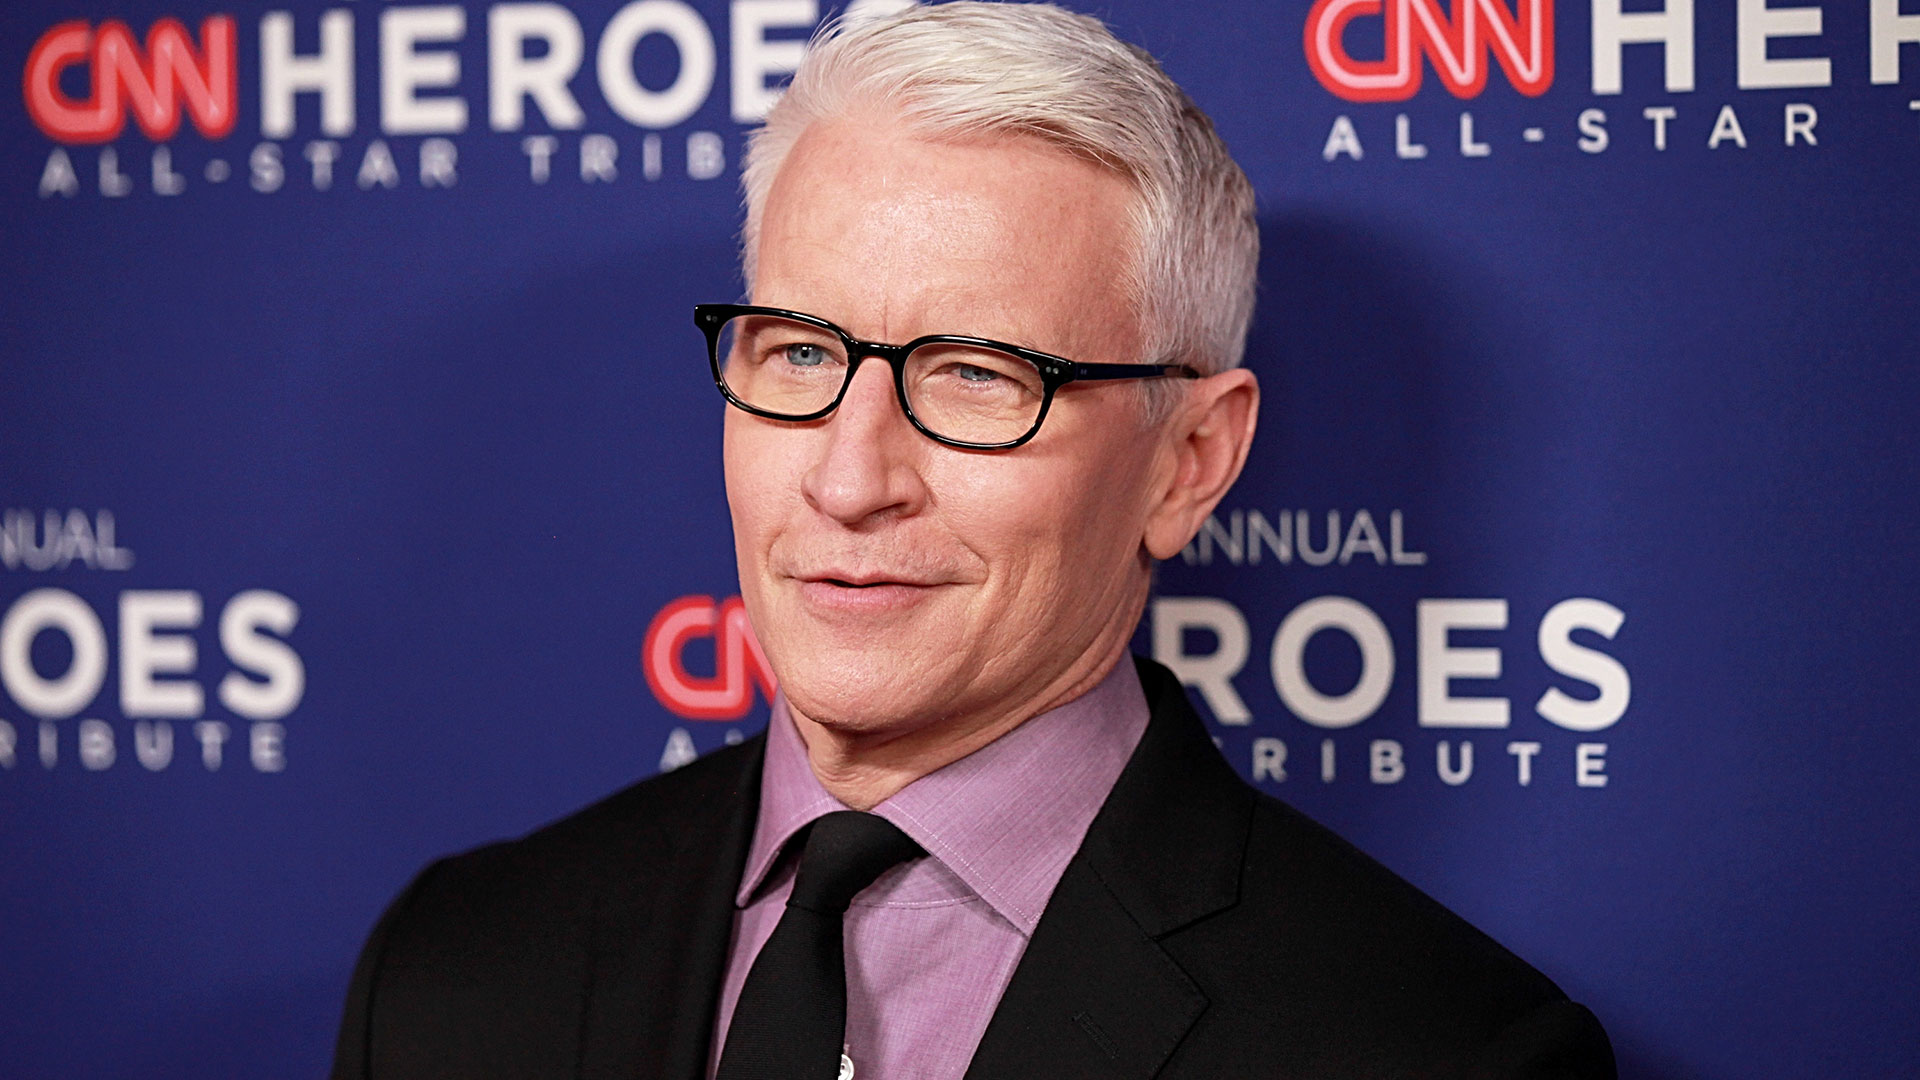 El periodista Anderson Cooper reveló cómo Richard Gere lo ayudó a darse cuenta de que era gay